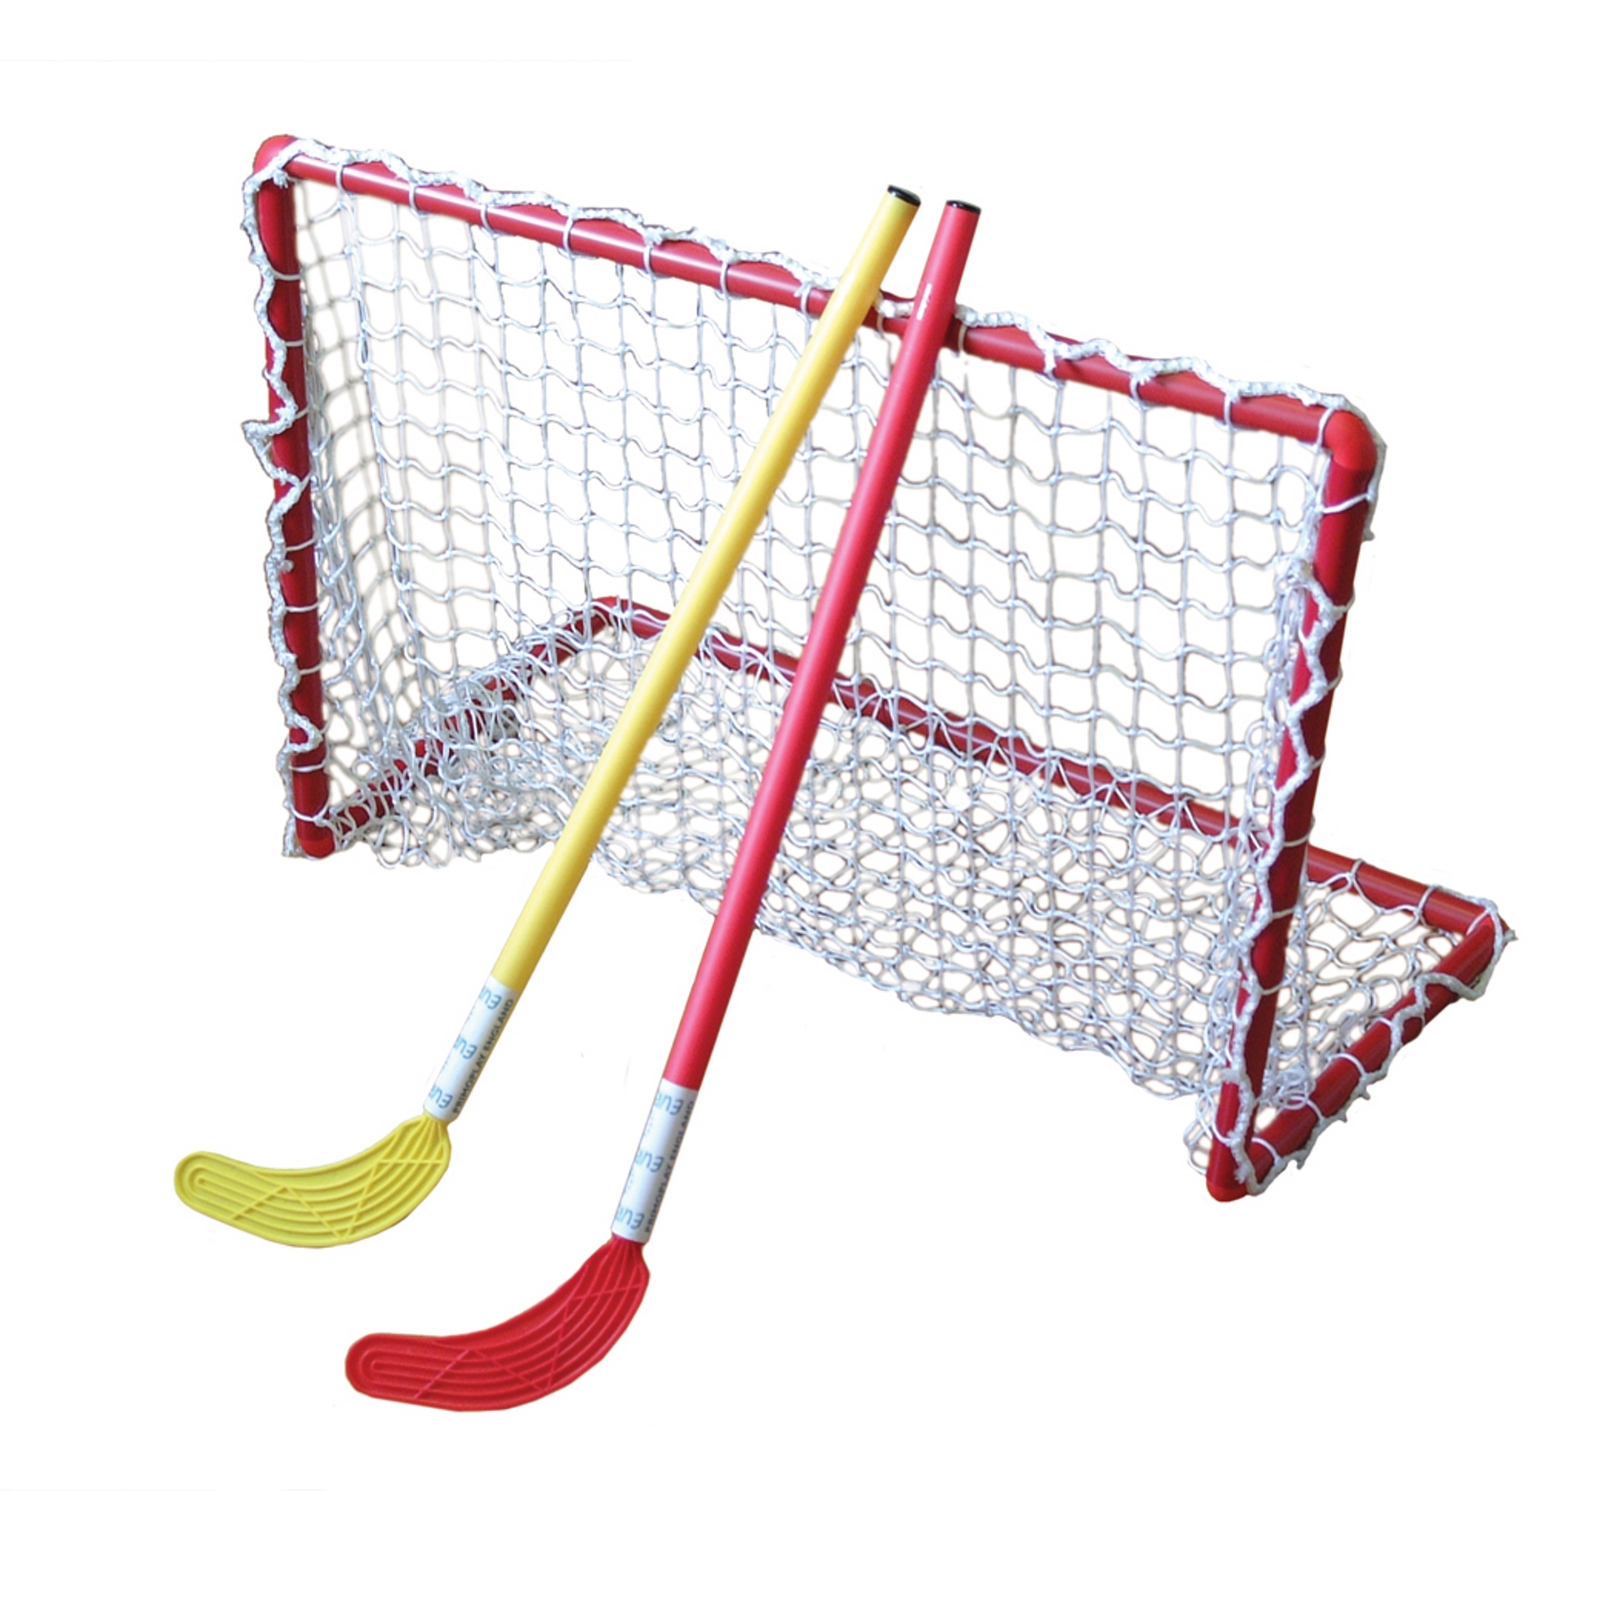 Eurohoc Red Floorball Mini Hockey Goals - 63 x 100cm - Per Pair